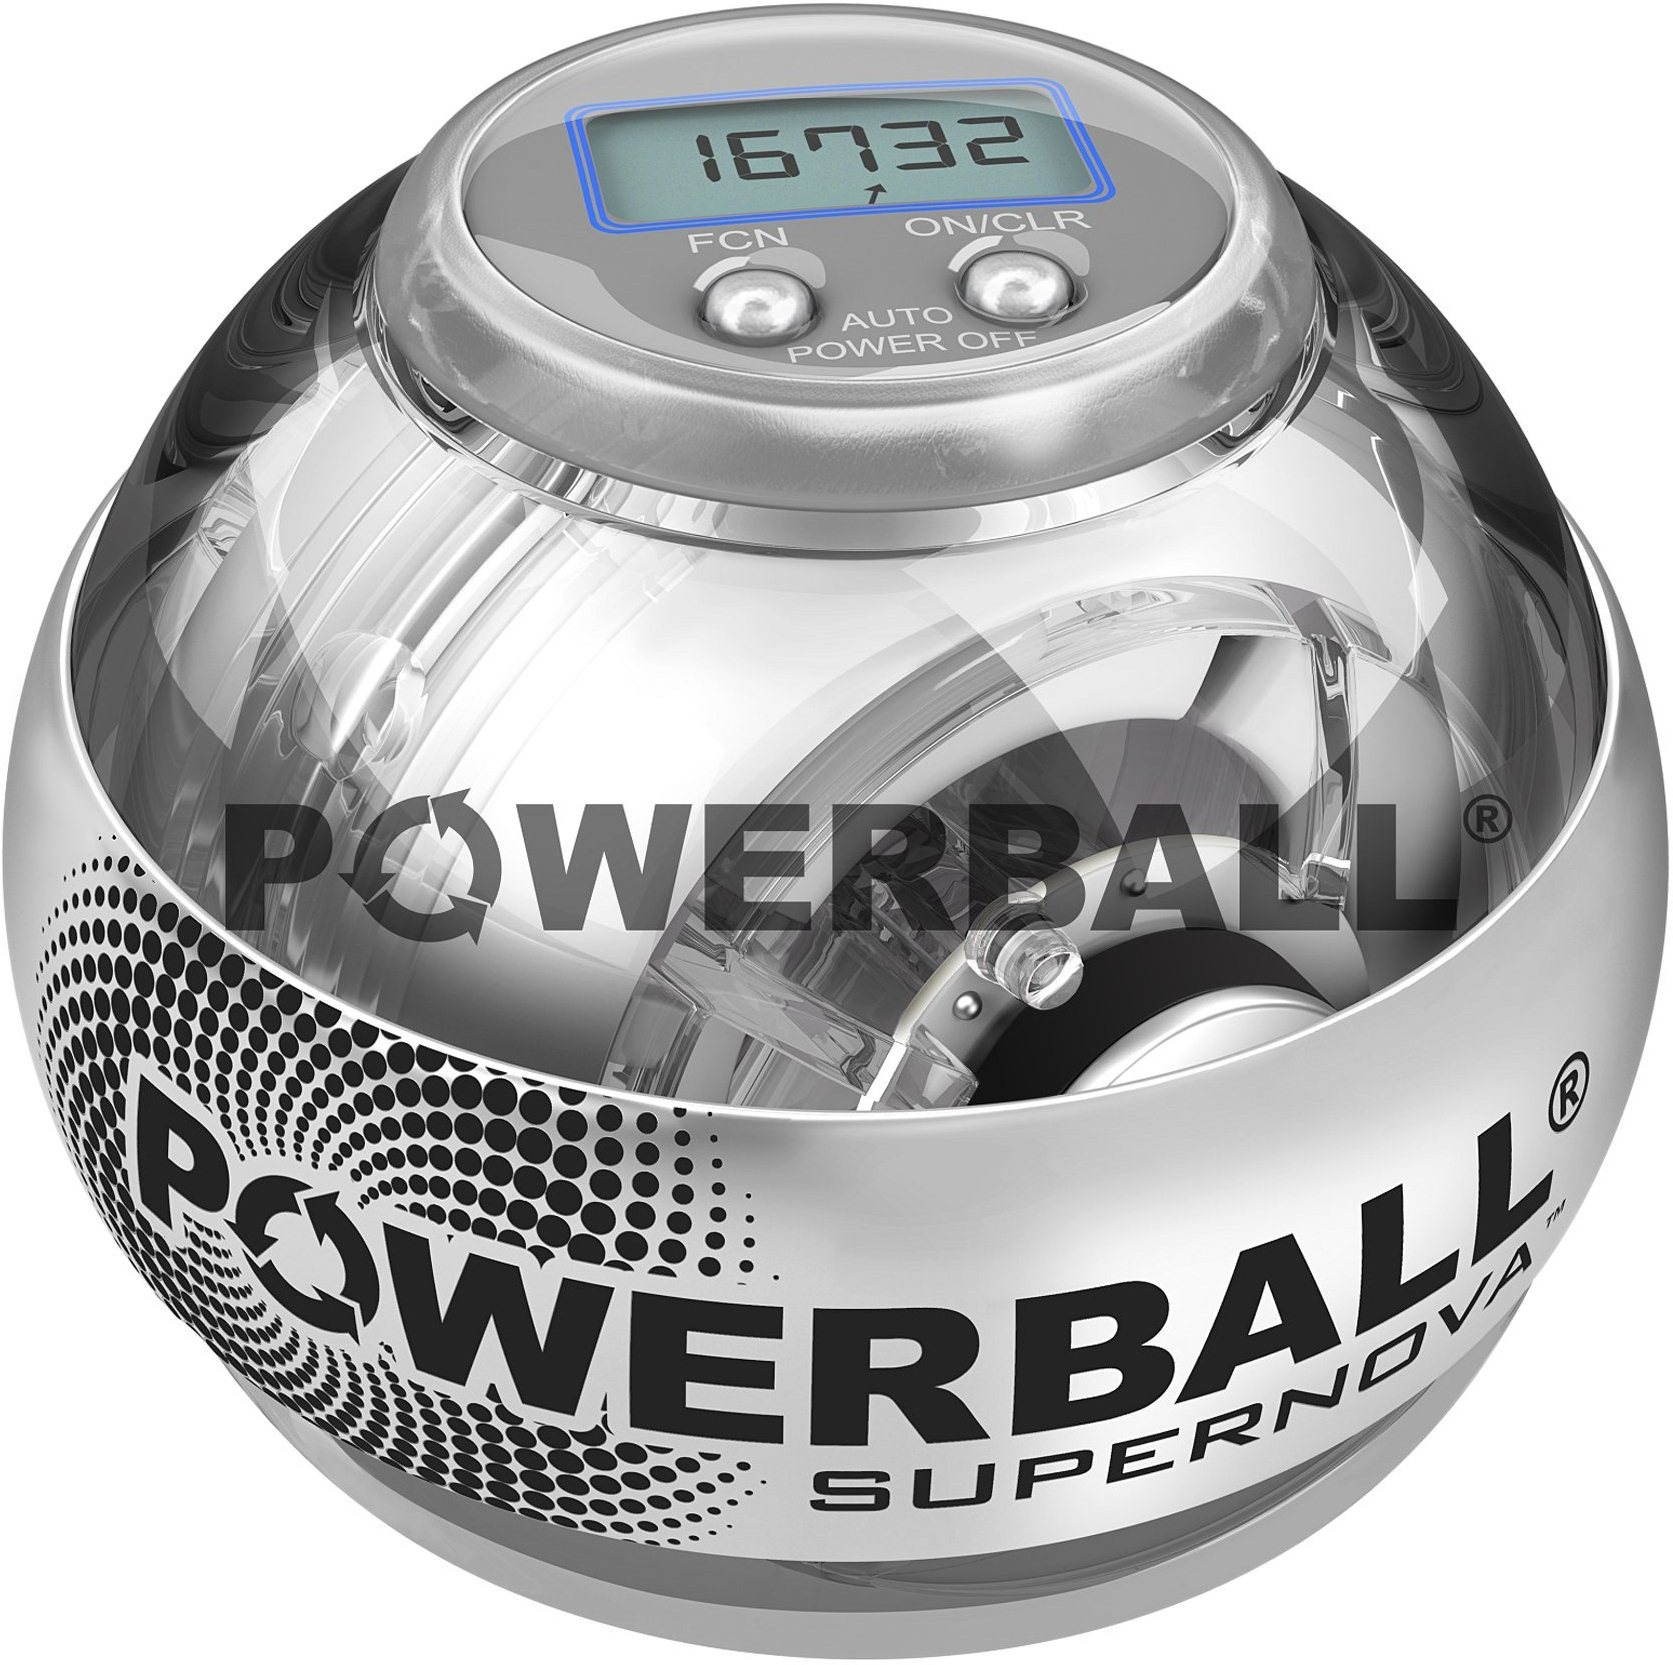 Powerball Powerball Supernova karerősítő